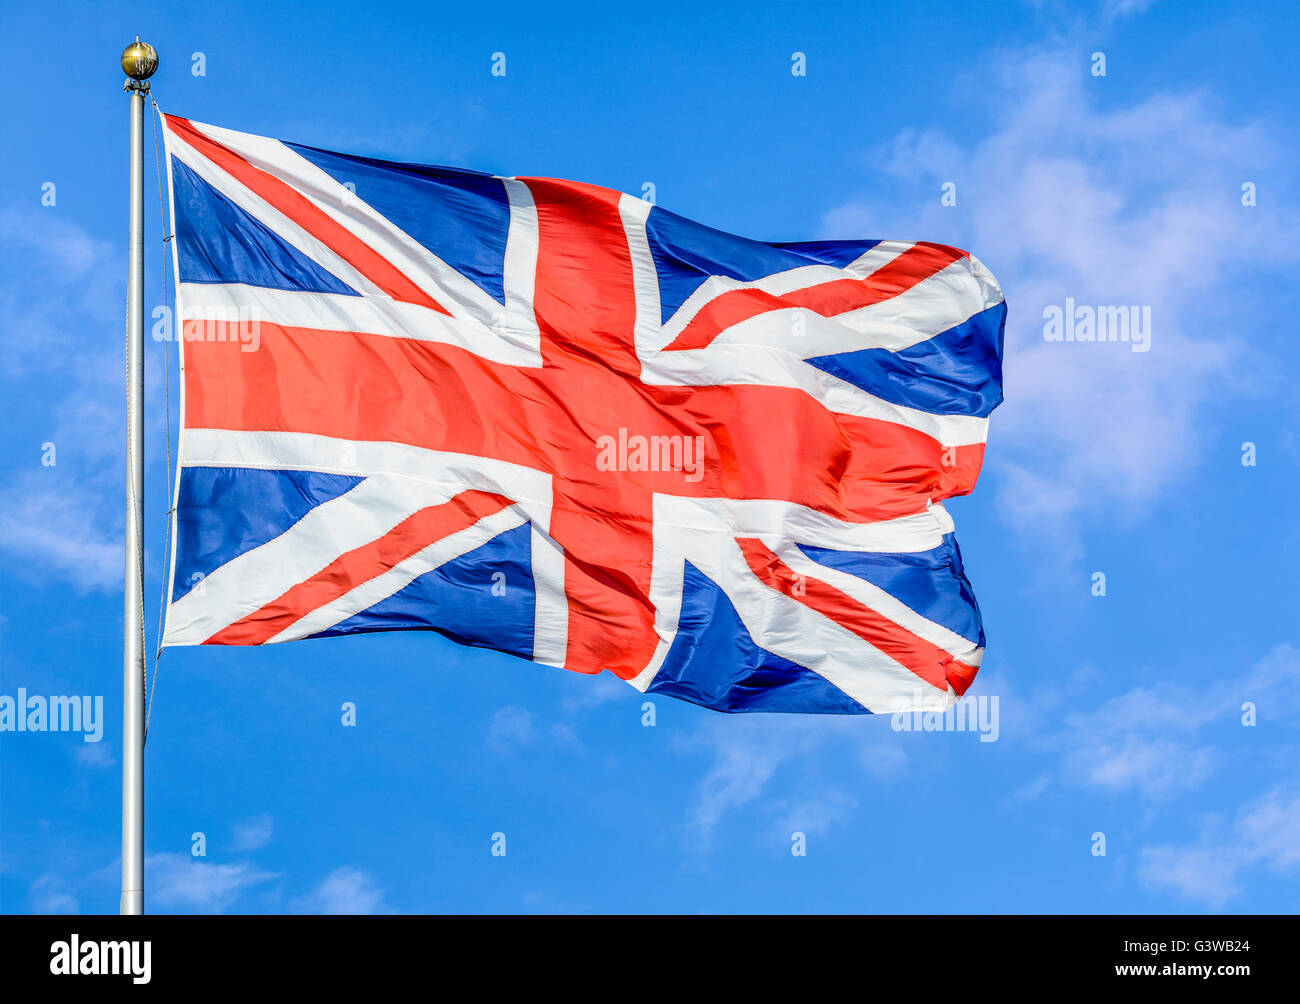 Union Jack flag du Royaume-Uni de Grande-Bretagne et d'Irlande du Nord, battant sur un poteau contre le ciel bleu. Banque D'Images